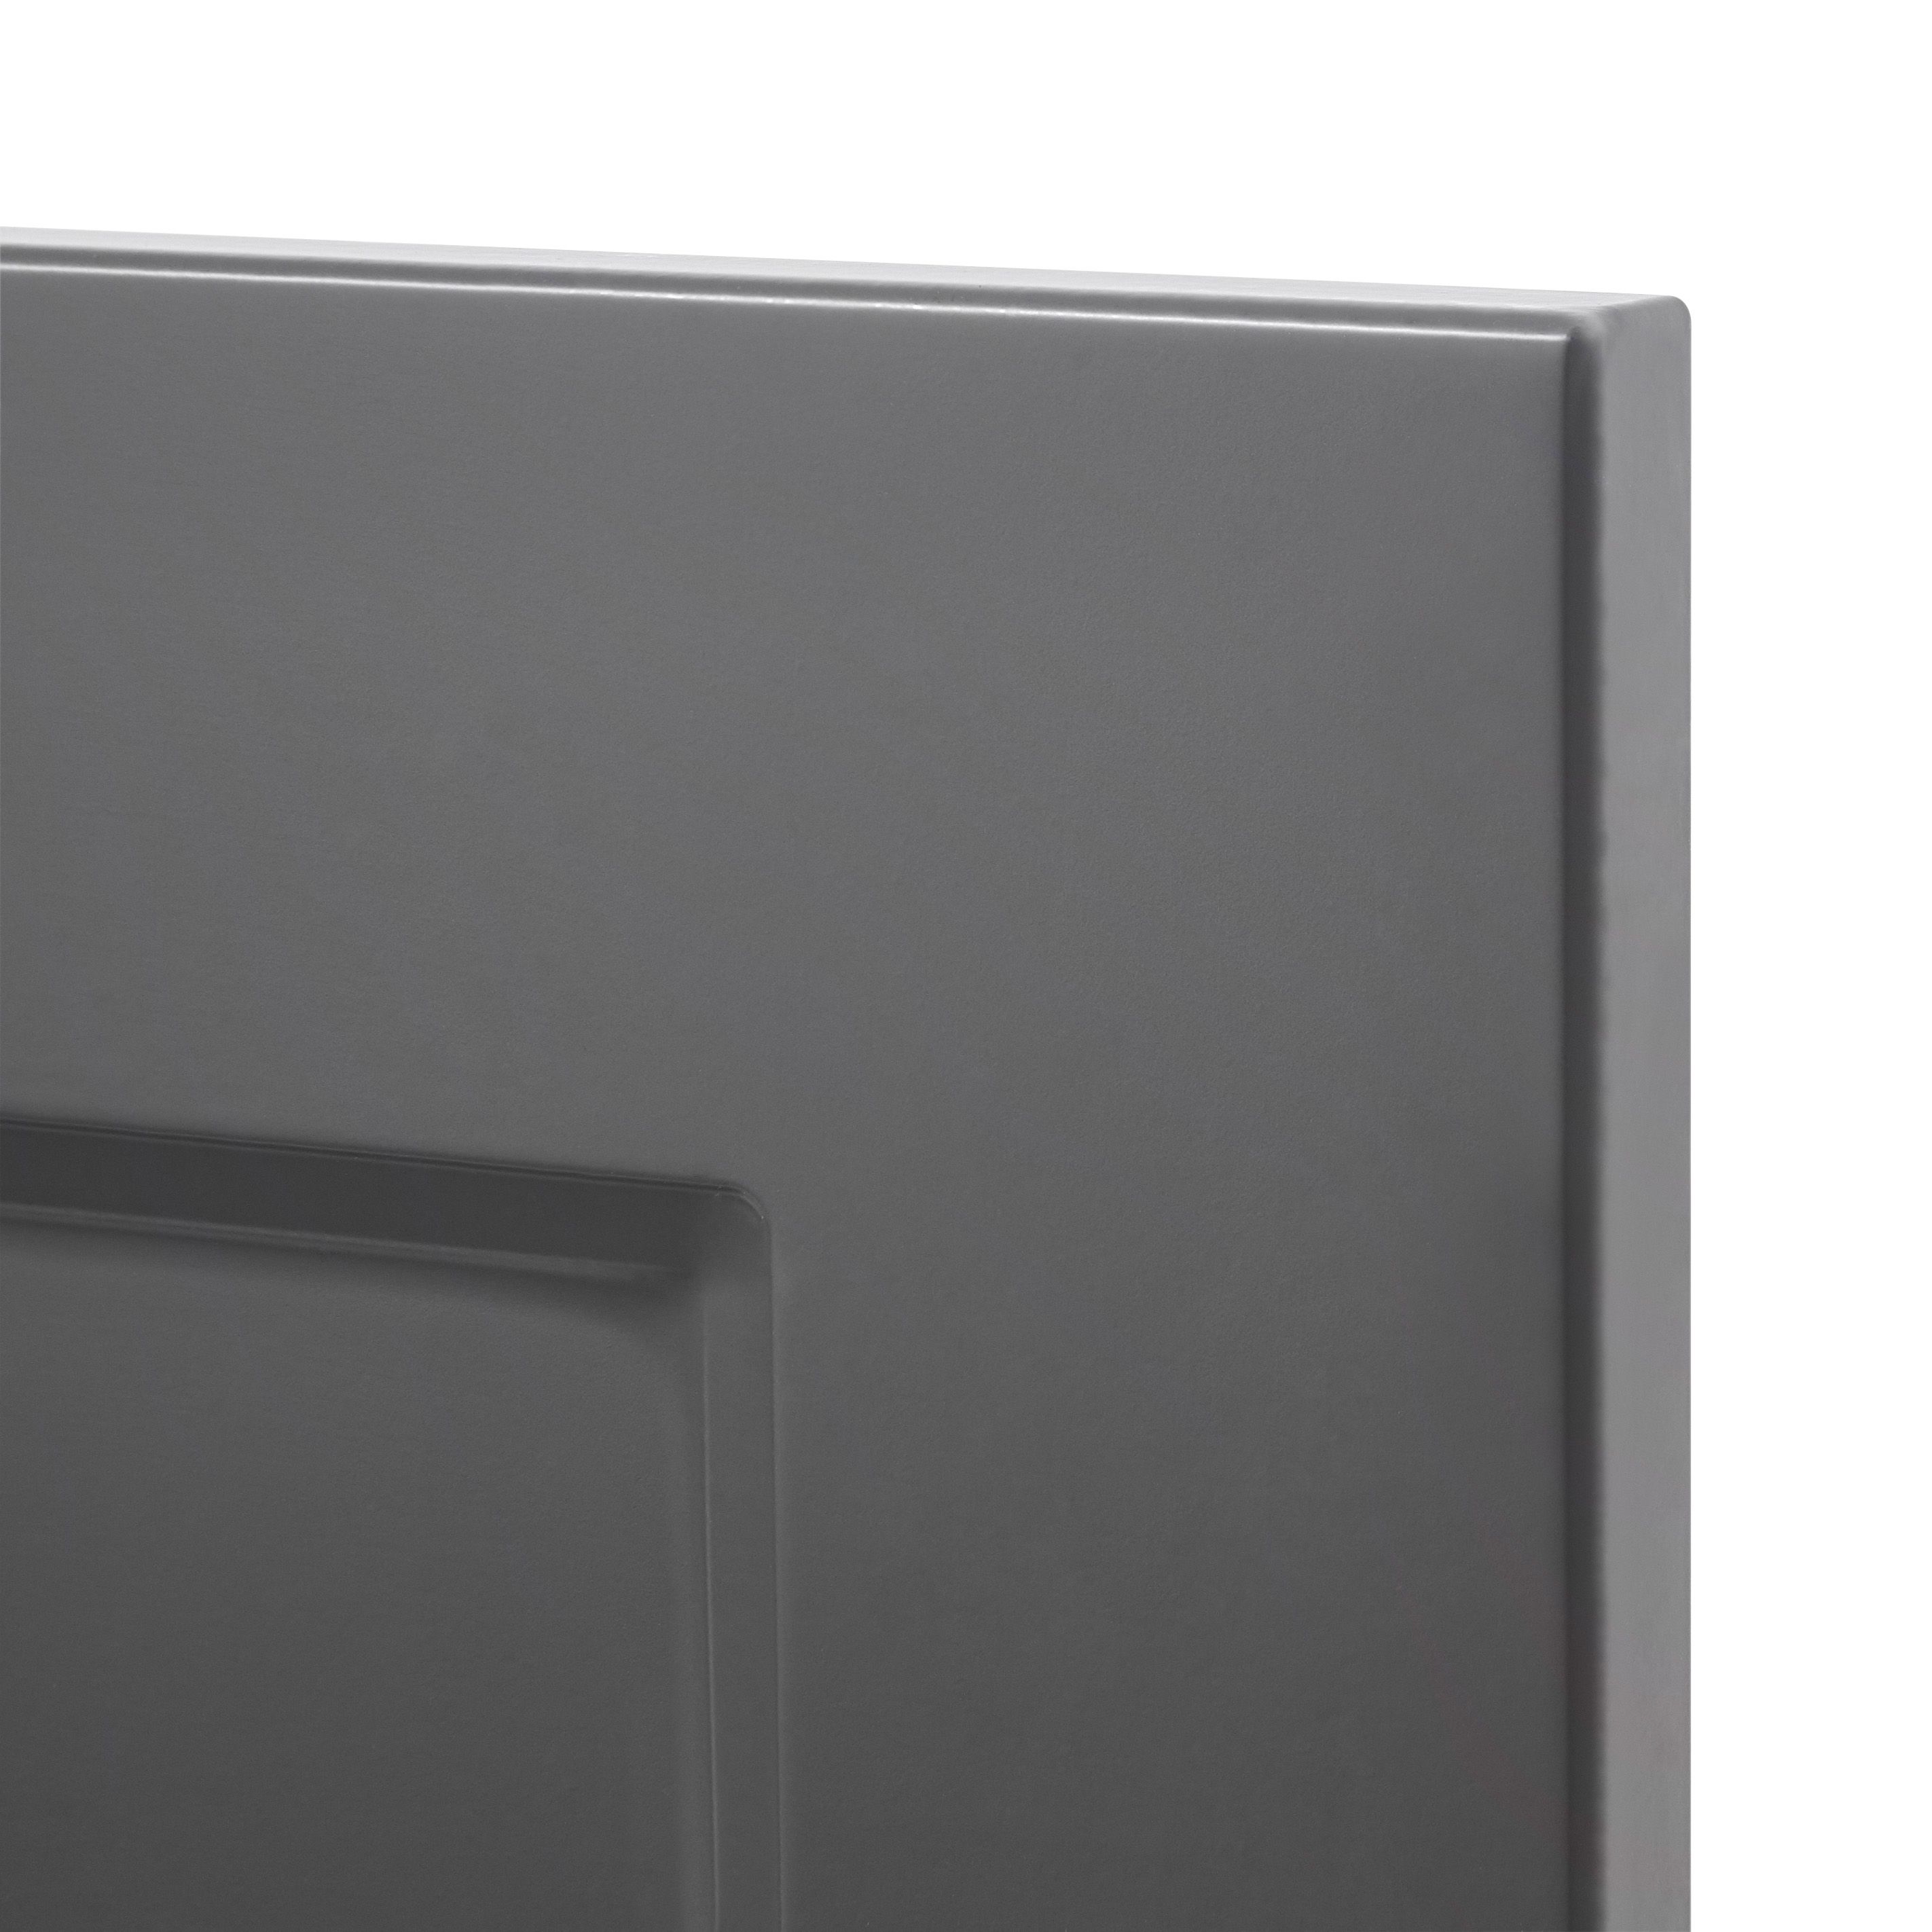 GoodHome Artemisia Matt graphite classic shaker Drawer front, bridging door & bi fold door, (W)1000mm (H)356mm (T)18mm